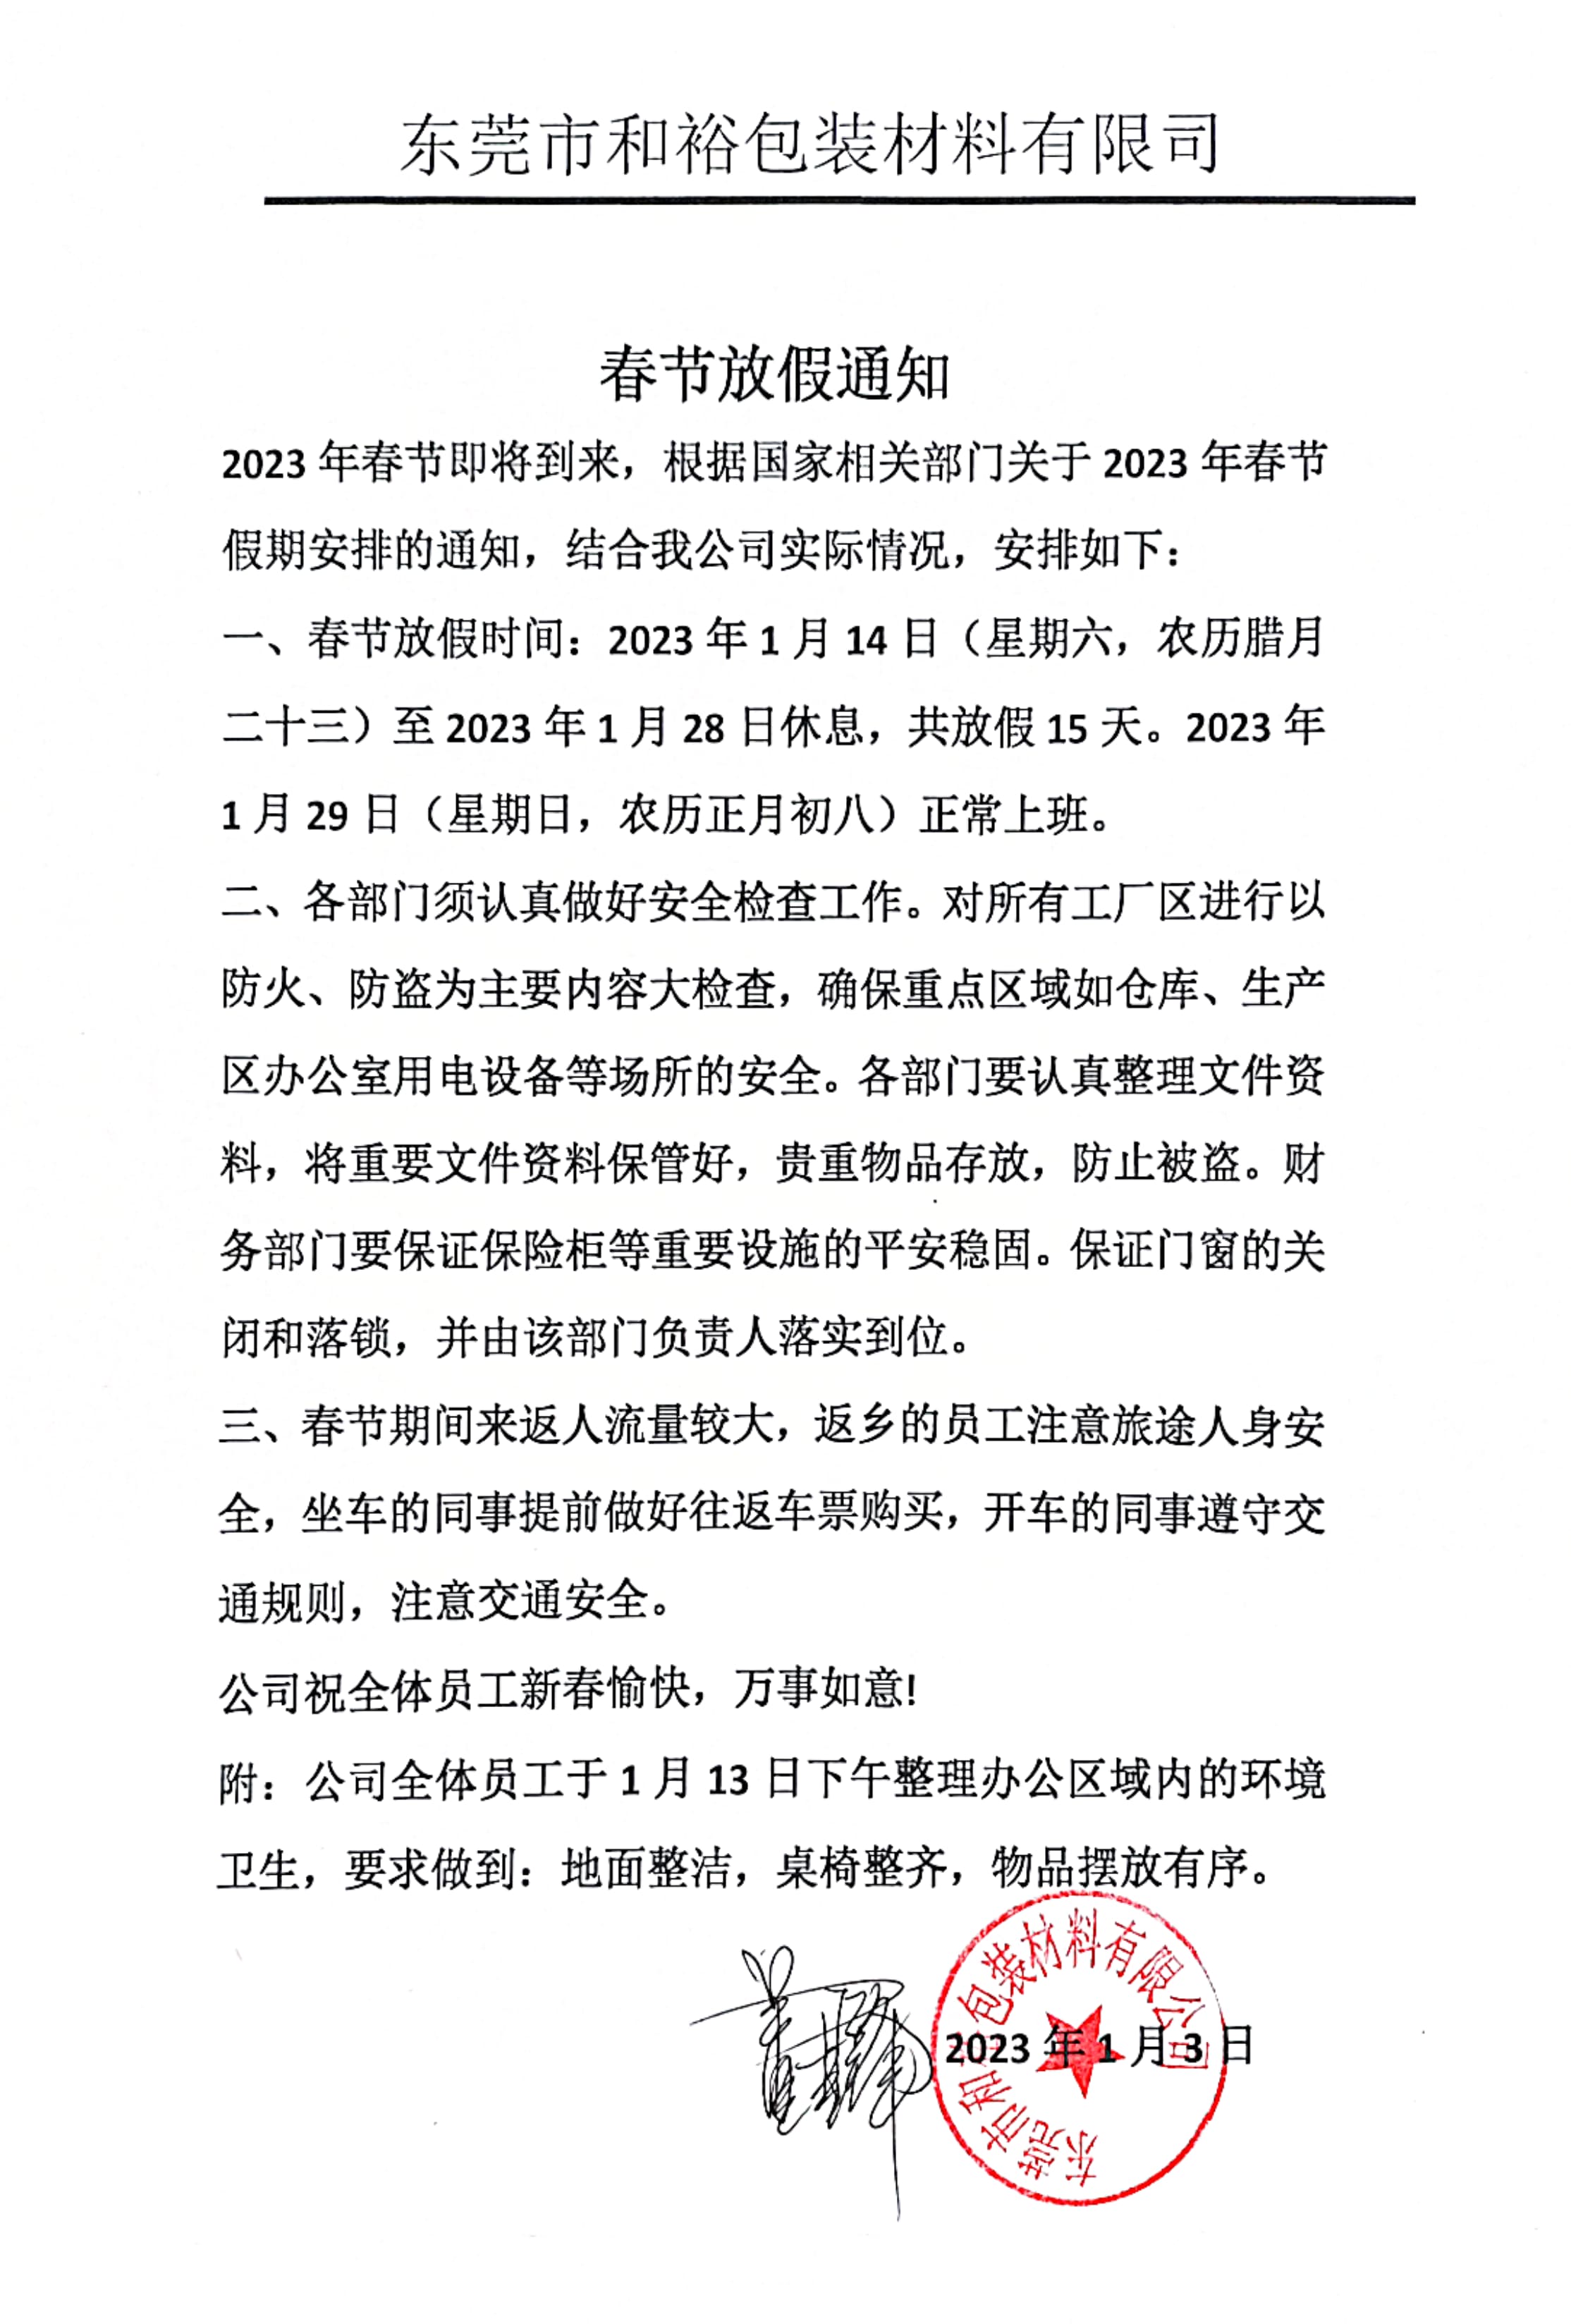 九龙坡区2023年和裕包装春节放假通知